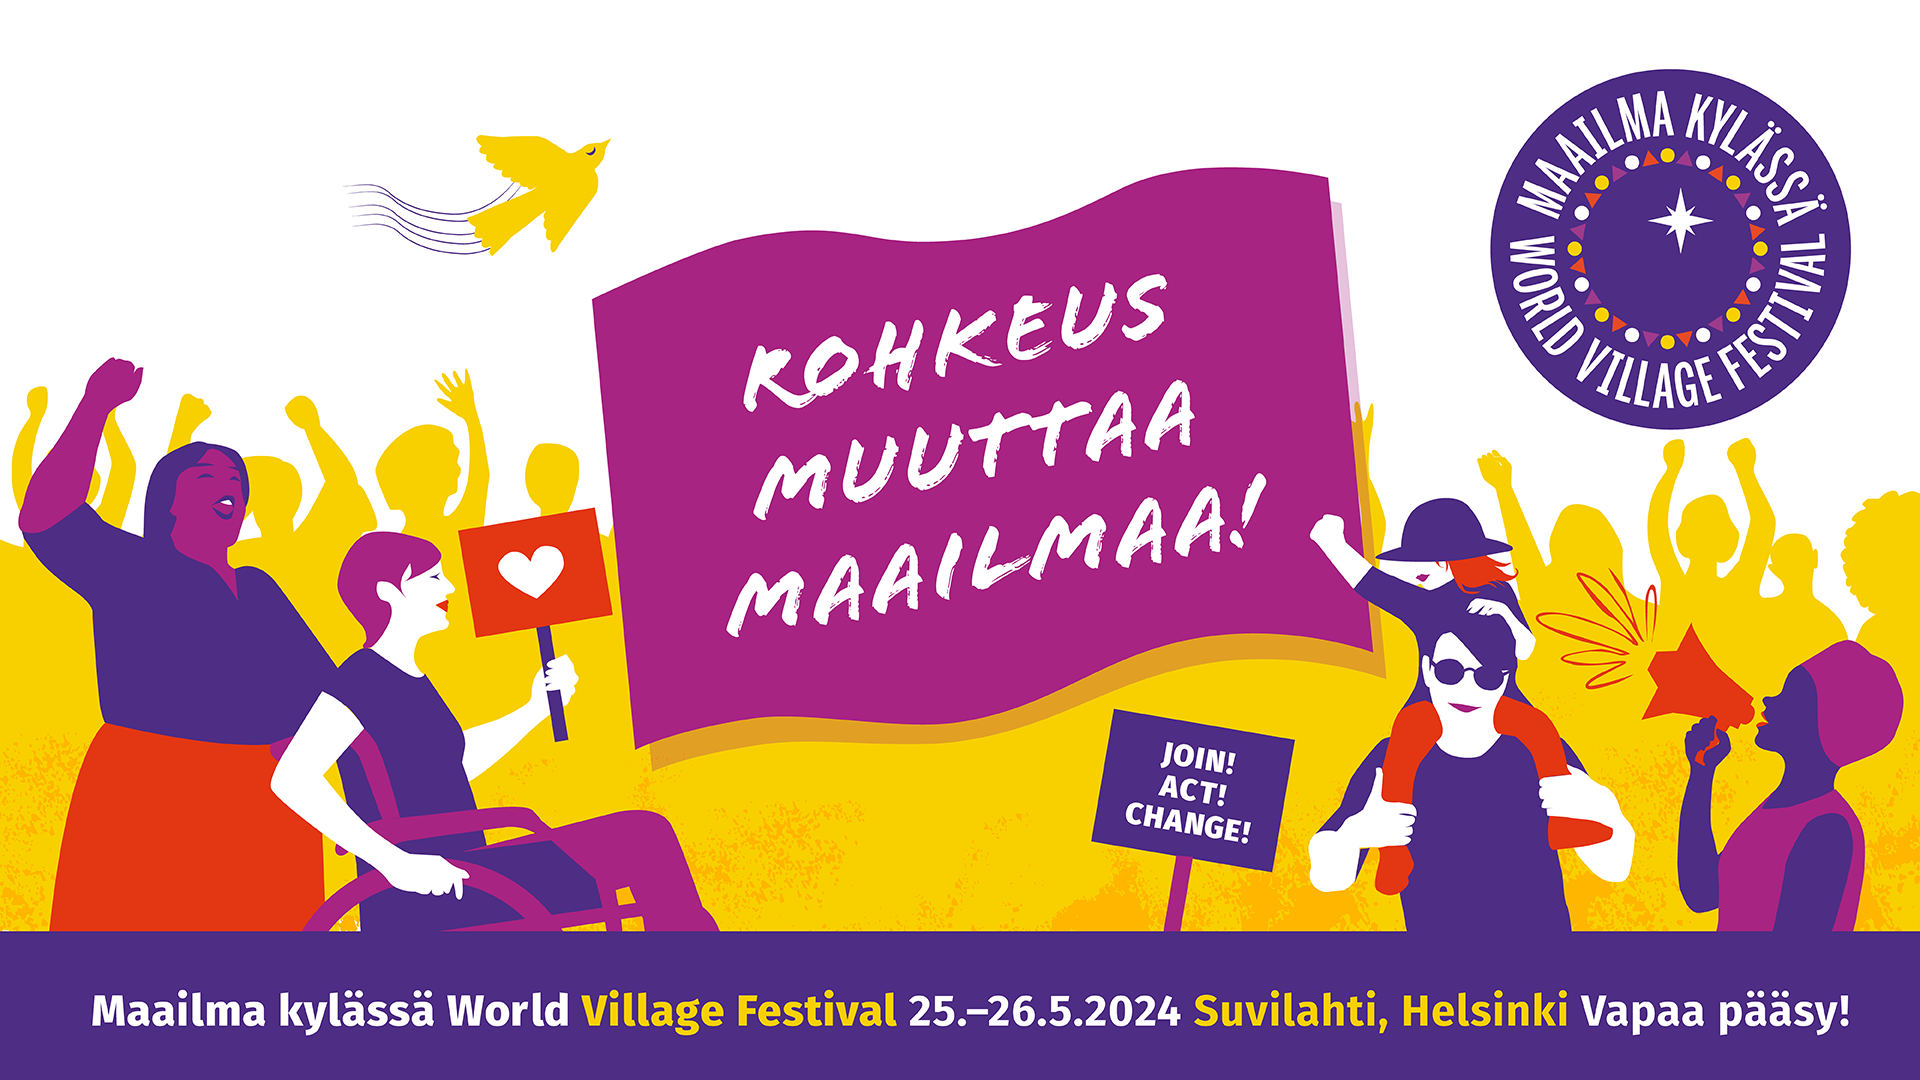 Maailma kylässä -festivaalin mainoskuva, jossa teksti Rohkeus muuttaa maailmaa!